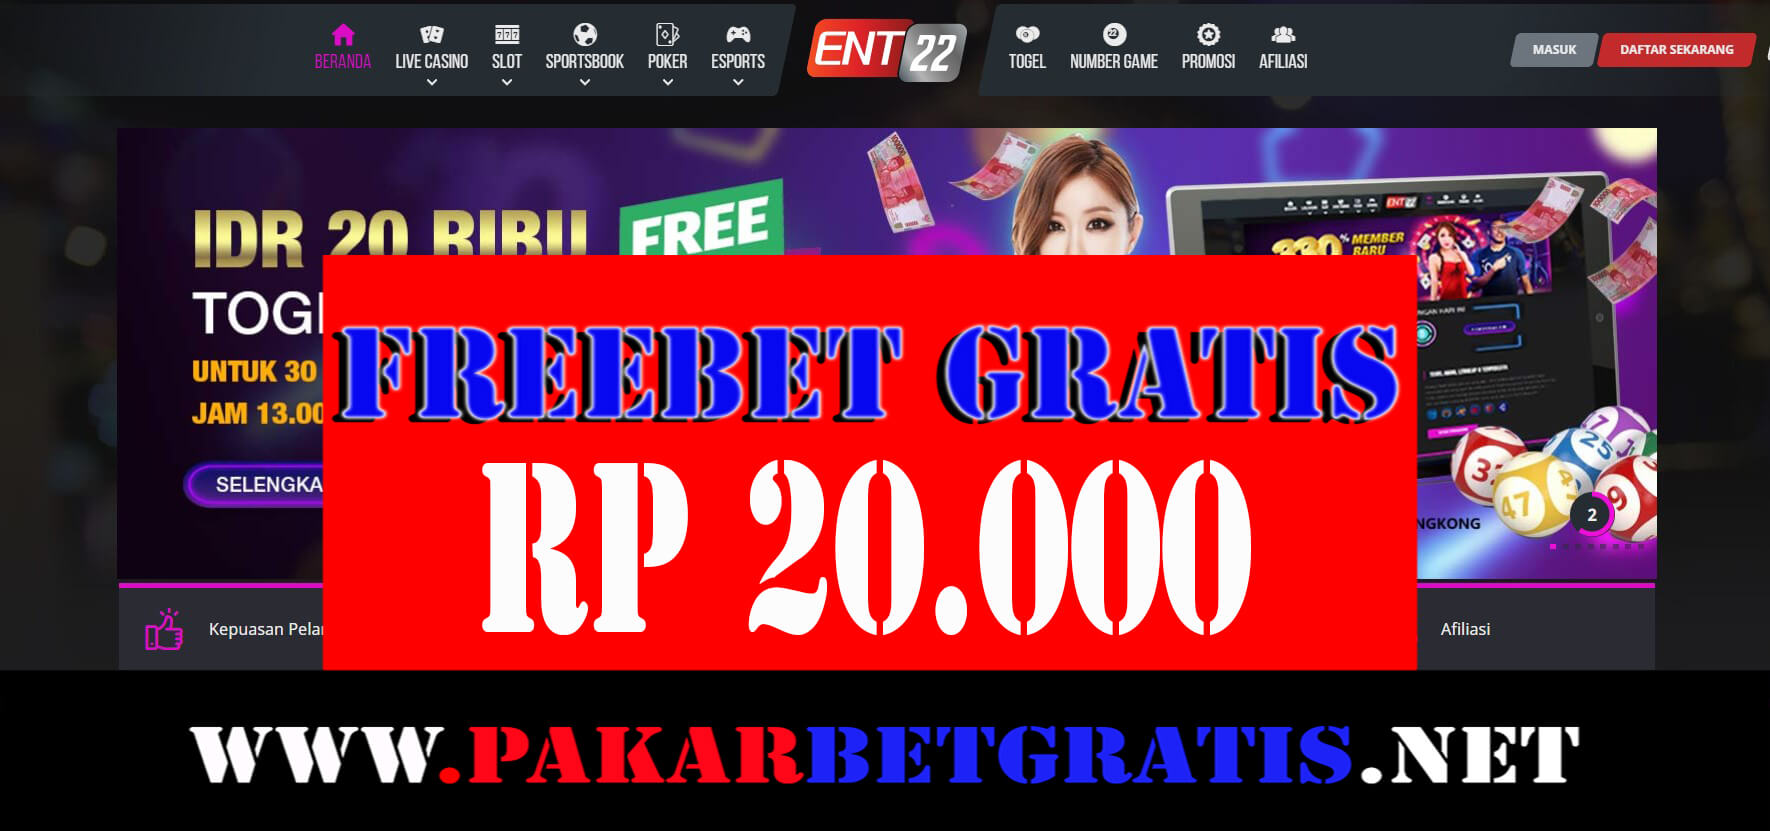 ent22 Freebet Gratis Rp 20.000 Tanpa Deposit